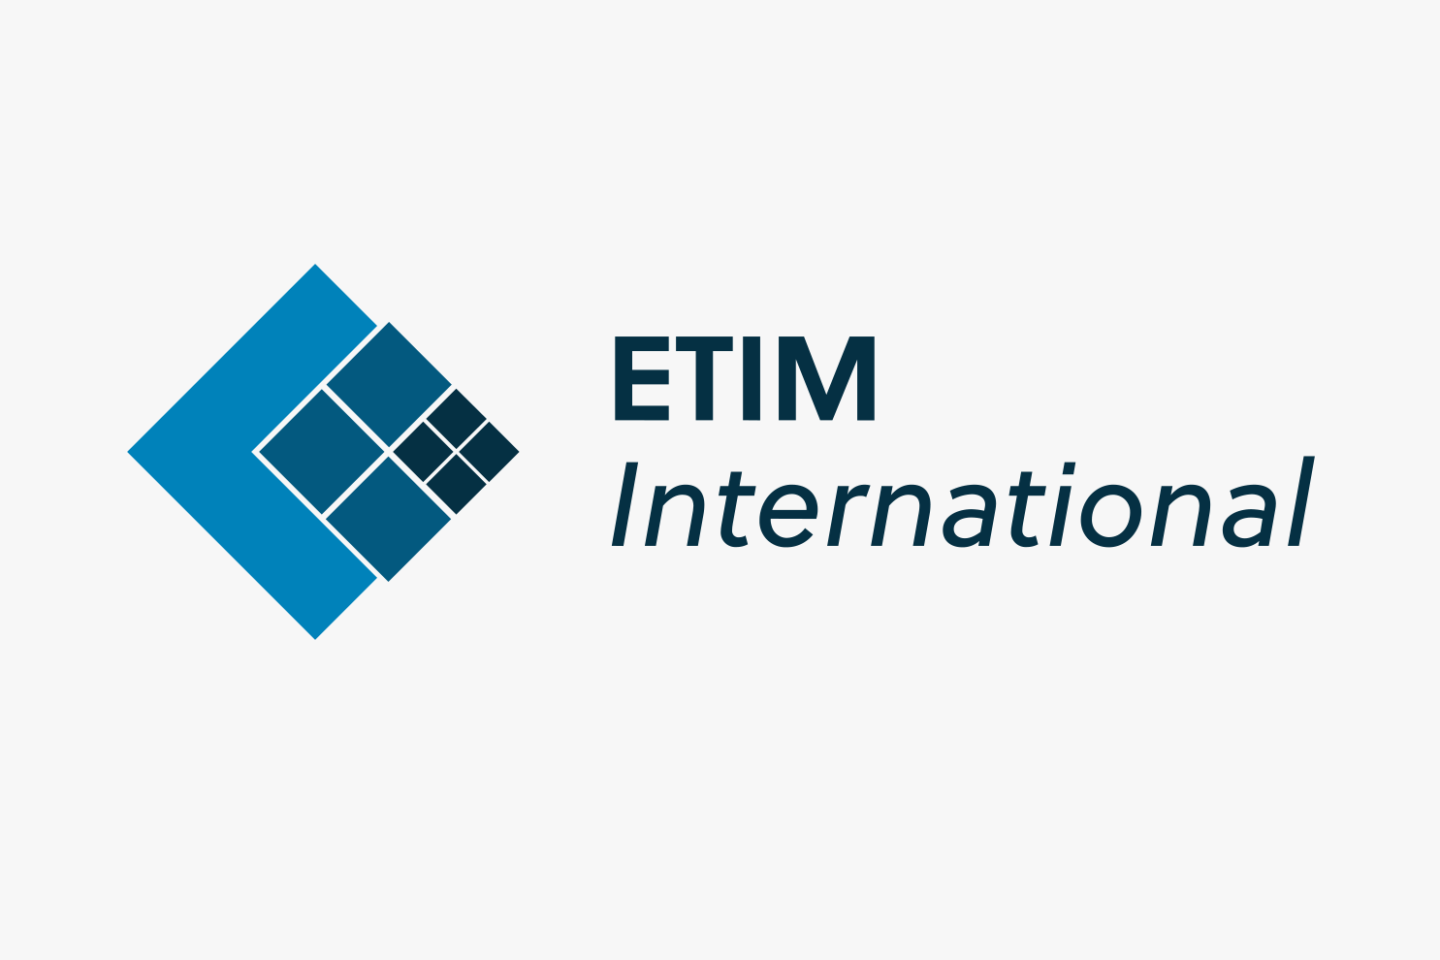 Der ETIM e.V. ist eine Initiative zur Standardisierung des elektronischen Produktdatenaustausches.